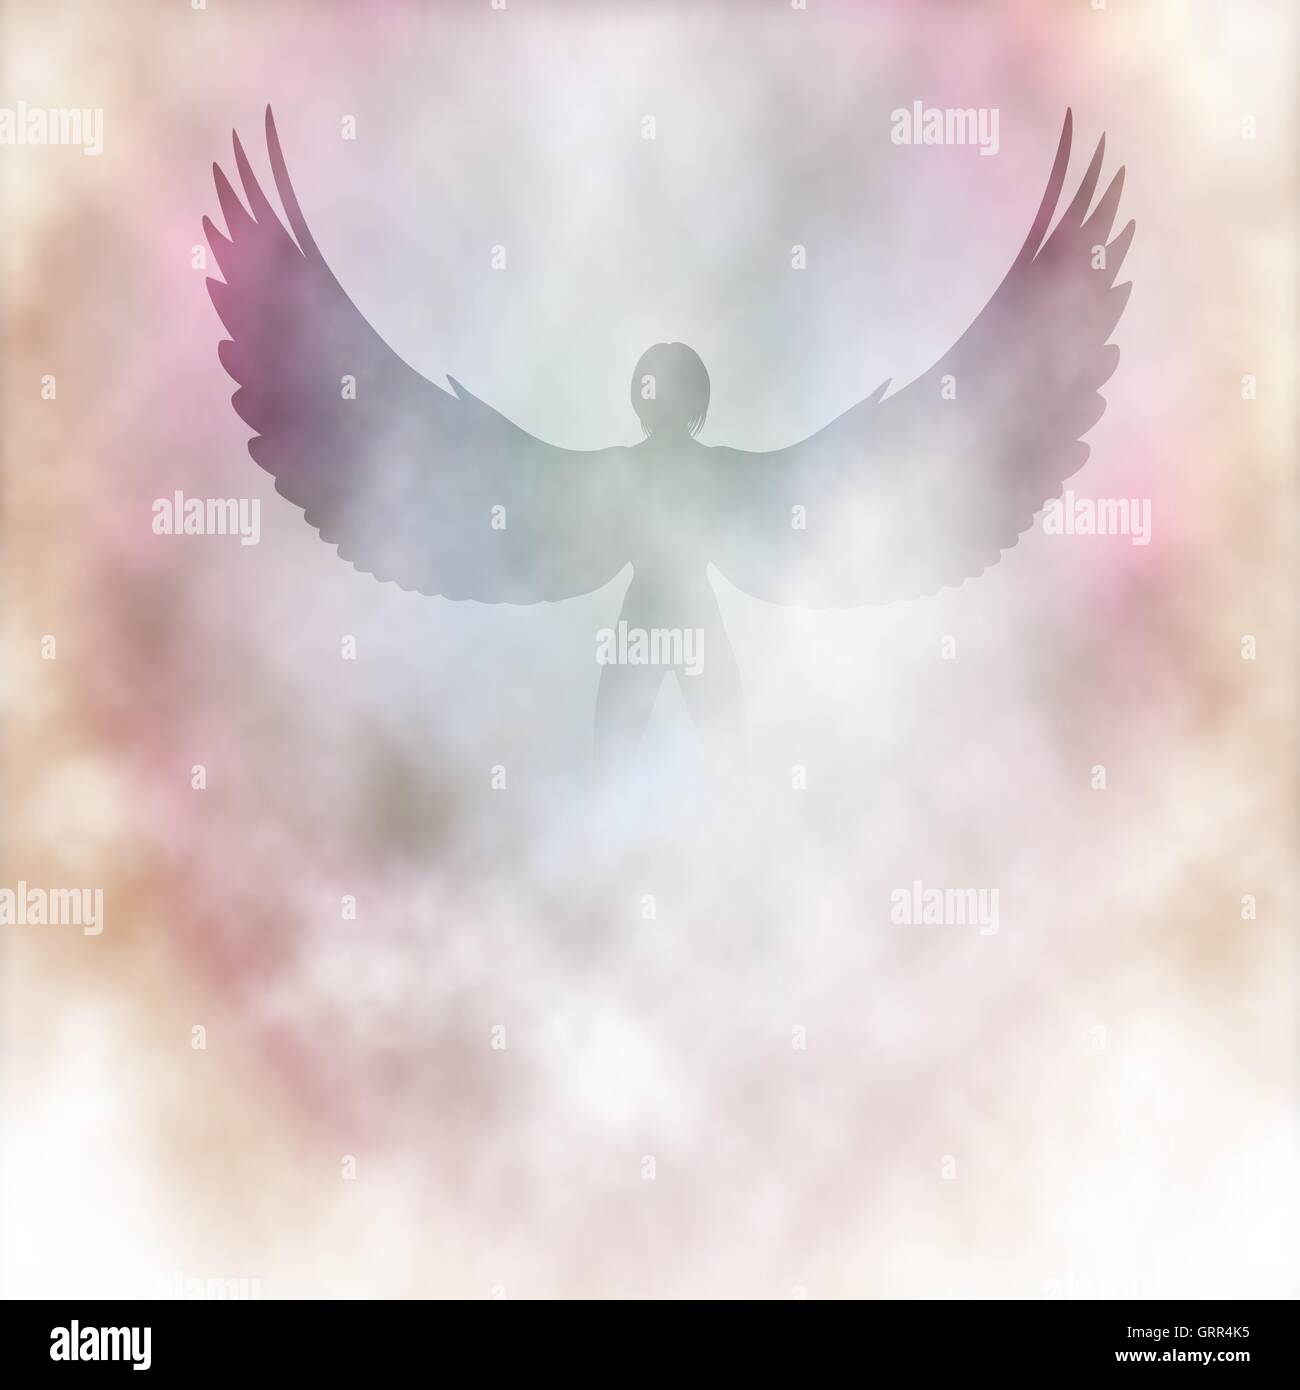 Illustration vectorielle modifiable d'un ange ailé dans des nuages ou de la fumée faite à l'aide de filets de dégradé Illustration de Vecteur